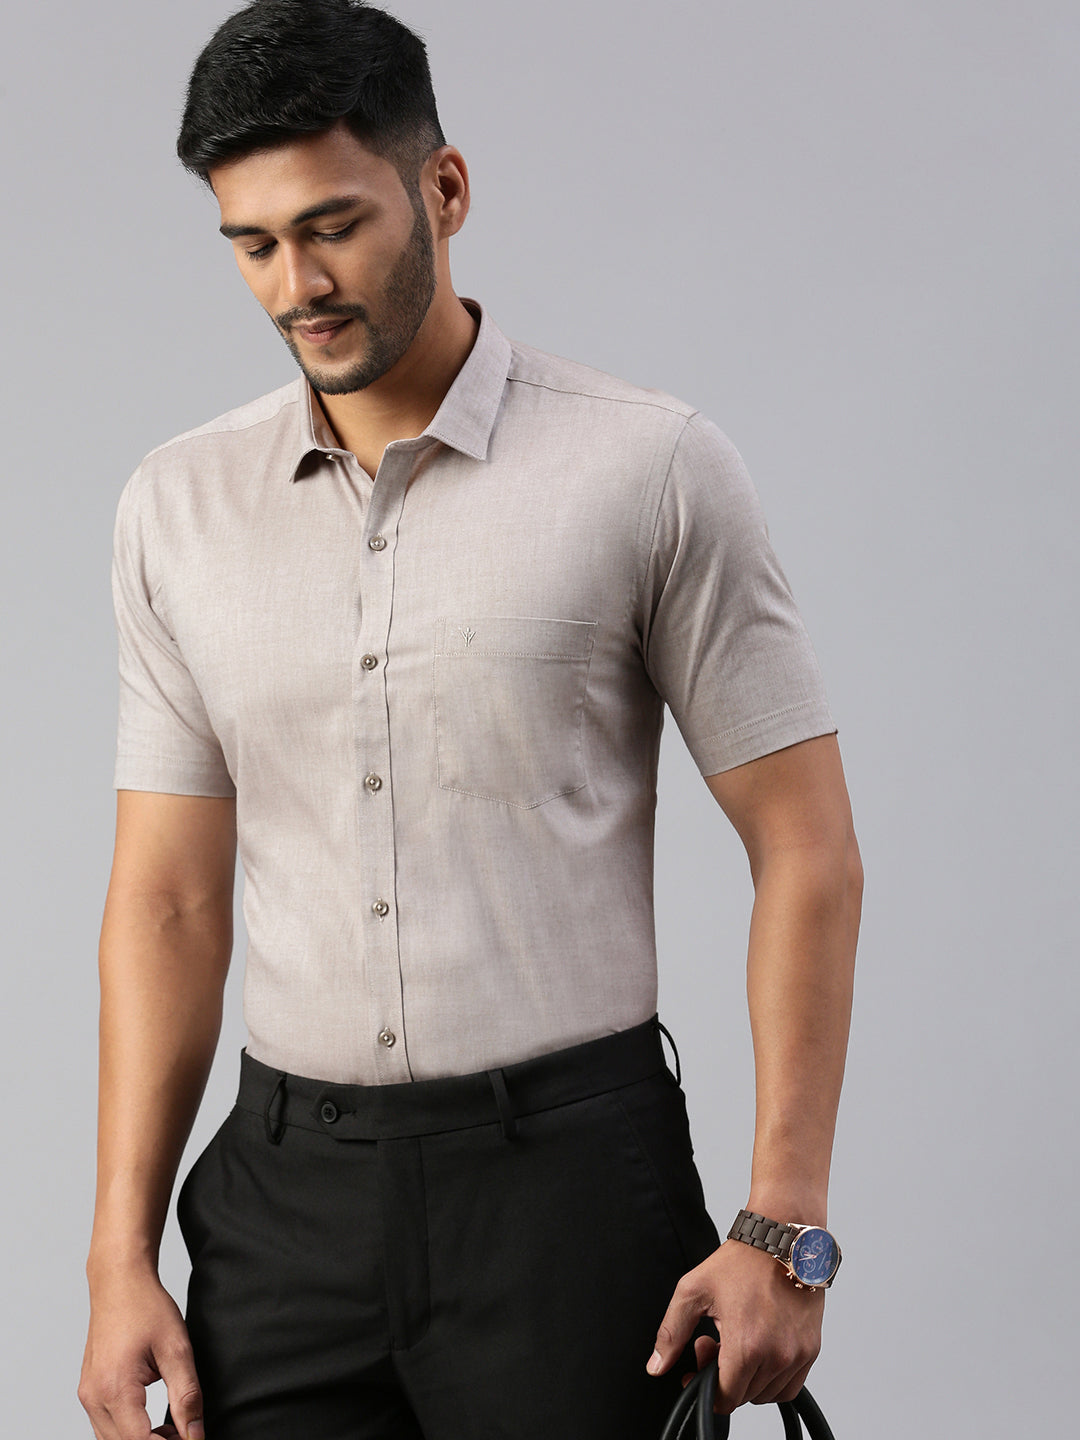 Mens Formal Light Grey Half Sleeves Shirt  CL6 GD5